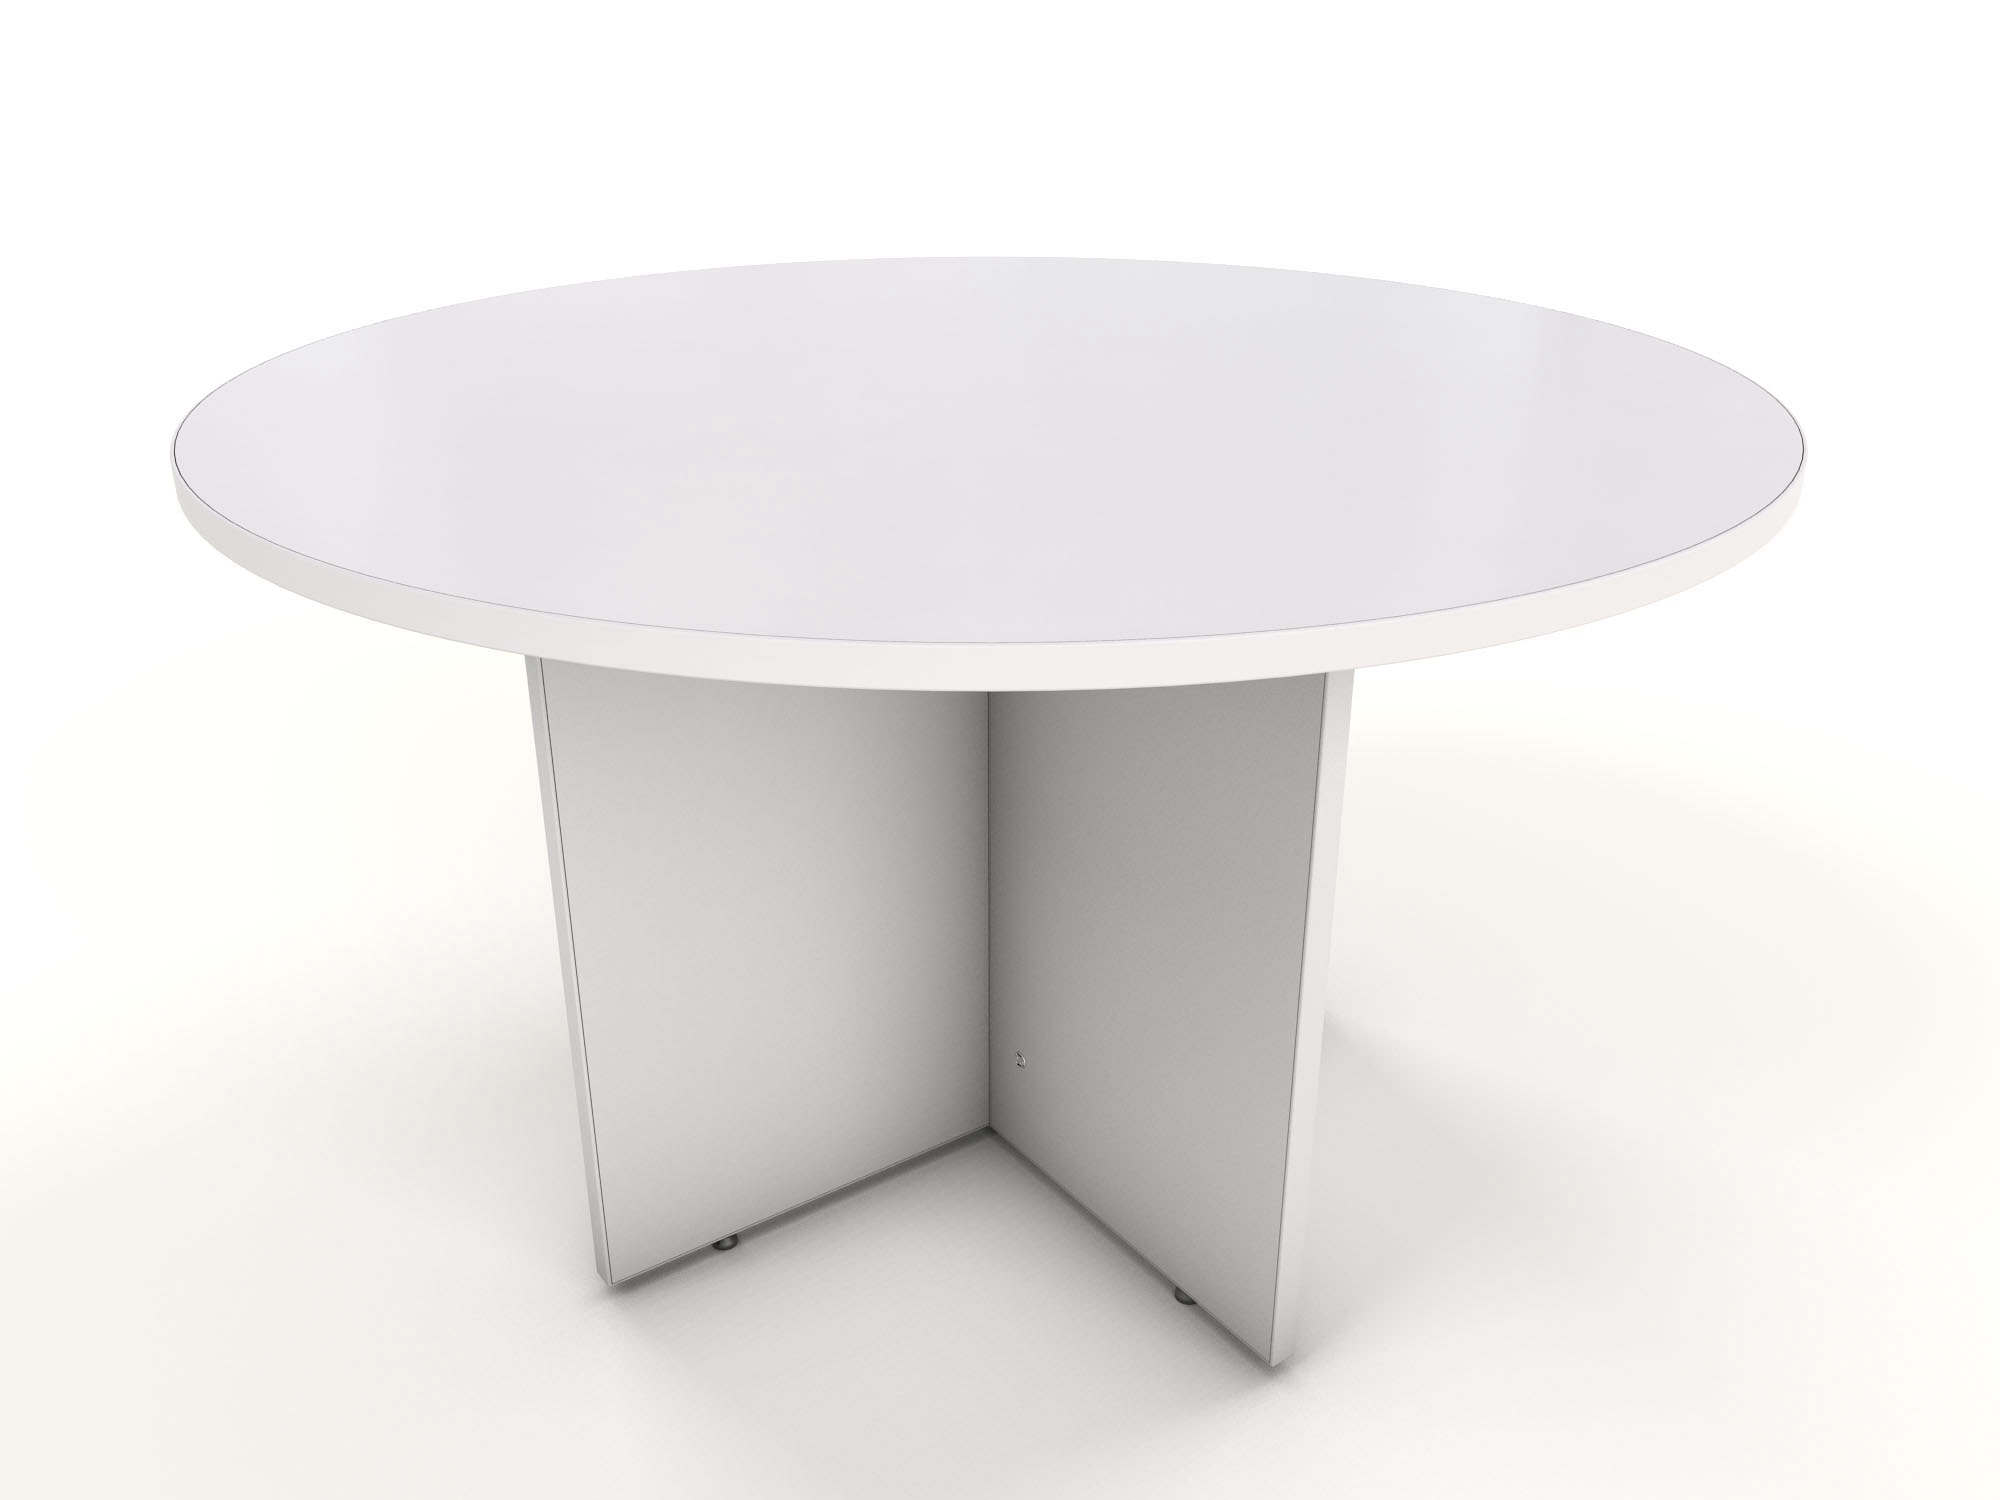 White round table 1000 dia